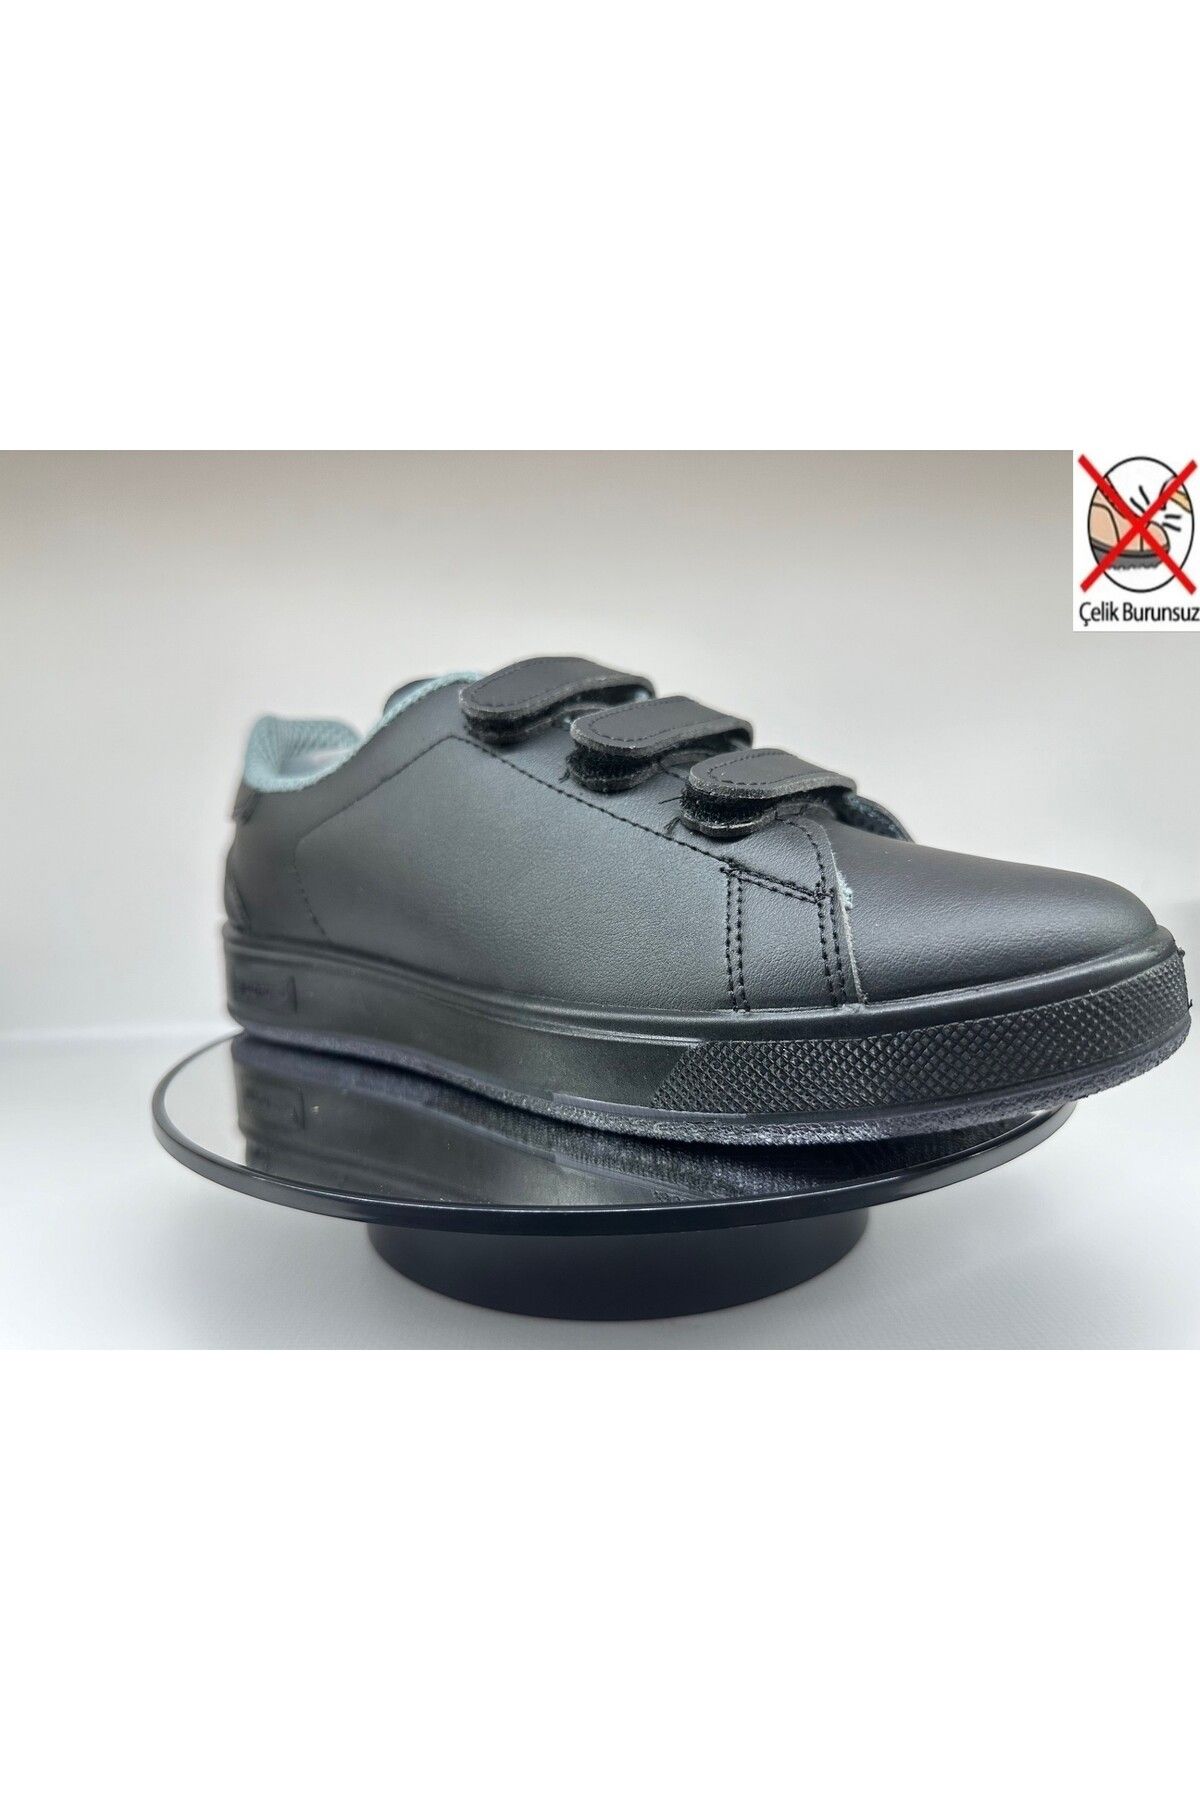 Mekap 303 C Siyah 4 Mevsim Ortopedik Kaydırmaz Tabanlı Rahat Yumuşak Çeliksiz Yürüyüş Spor Ayakkabı